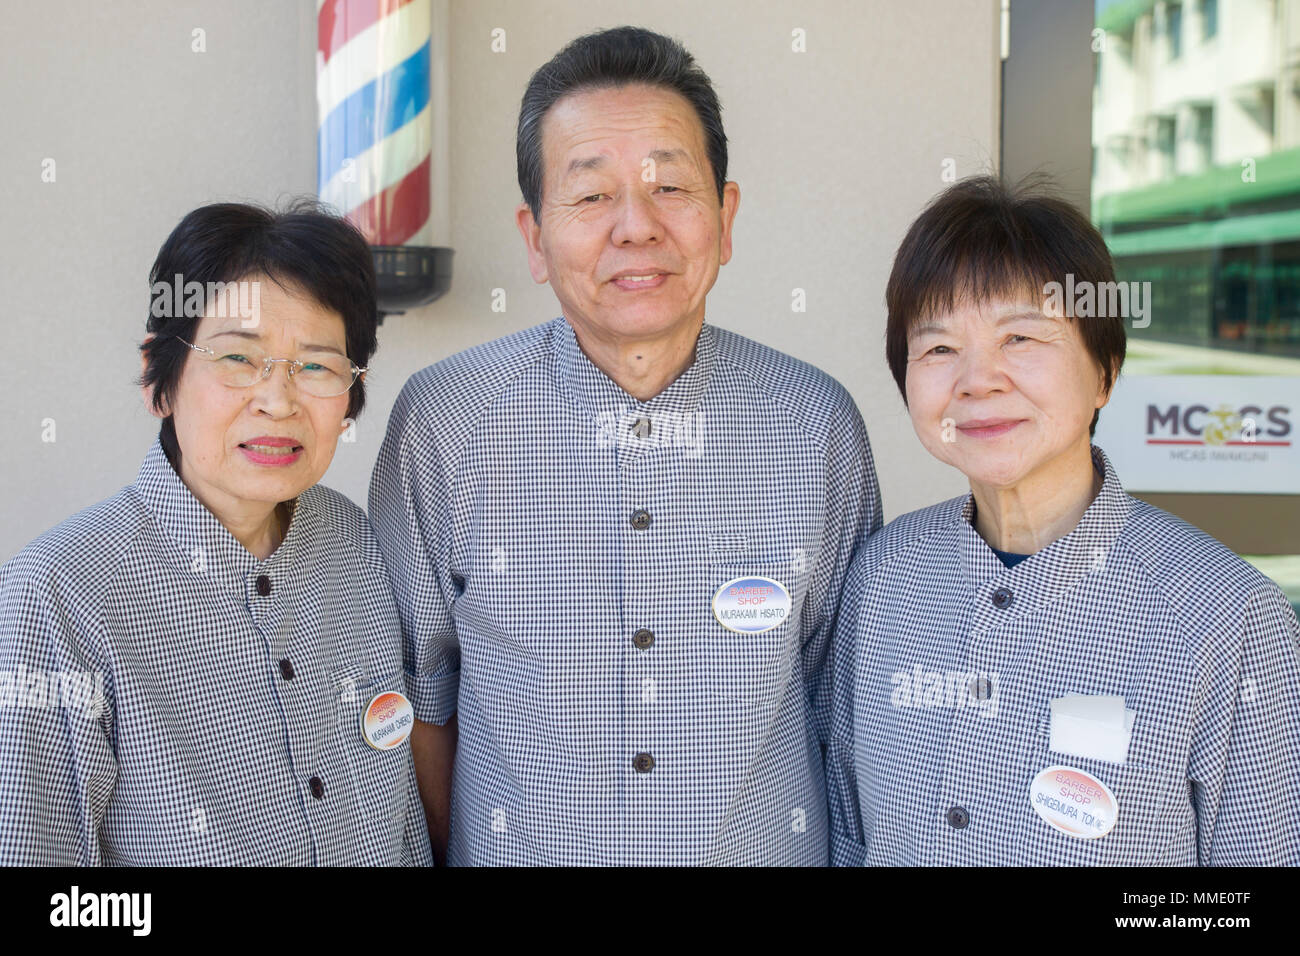 Chieko Murakami, Links, Hisato Murakami, Mitte und Tomie Shigemura, Friseure in der Marine Corps Air Station Iwakuni, Japan arbeiten, posieren vor dem Torii Kiefern Friseur an der Air Station, Okt. 25, 2017. Sie sind derzeit drei der Ältesten beschäftigt japanische Arbeiter an der Basis. Shigemura begann im Jahre 1970, und Hisato und seine Frau, Chieko, schlossen sich ihr ein Jahr später. Nach fast einem halben Jahrhundert, diese Friseure haben ihre Scherer durch die Haare der unzähligen Marines Pfiff. Vom Hund Tage der Vietnam Krieg zu dem laufenden Krieg gegen den Terror haben Sie Summte ihren Weg durch die Zeit bei WAB Iw Stockfoto